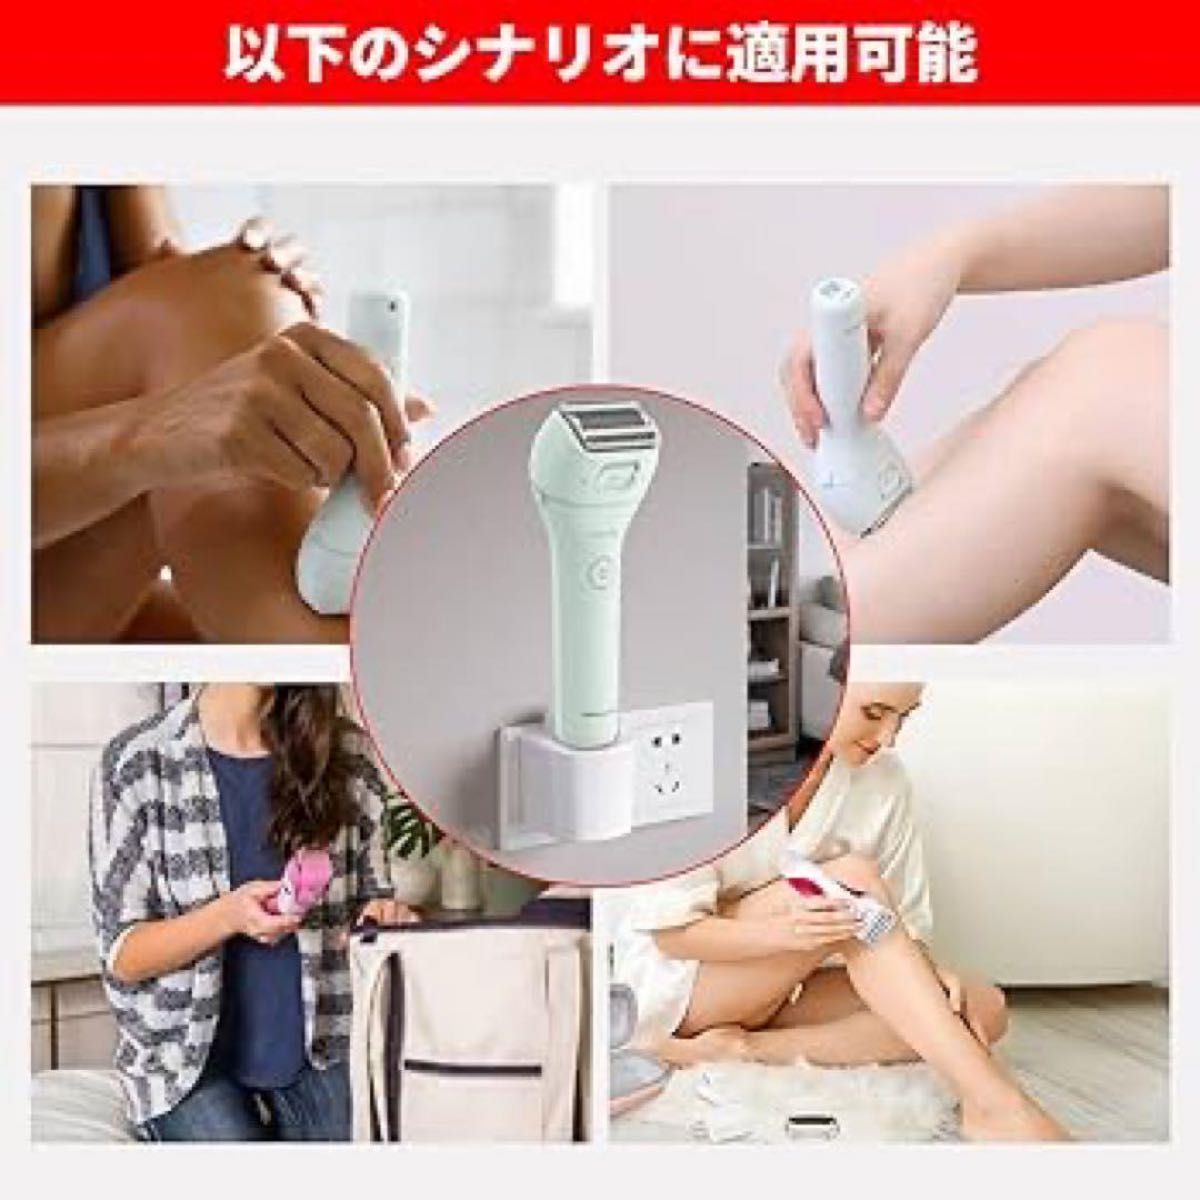 【即購入OK】シェーバー充電アダプター 女性用 シェーバー 充電 充電器 コンセント 